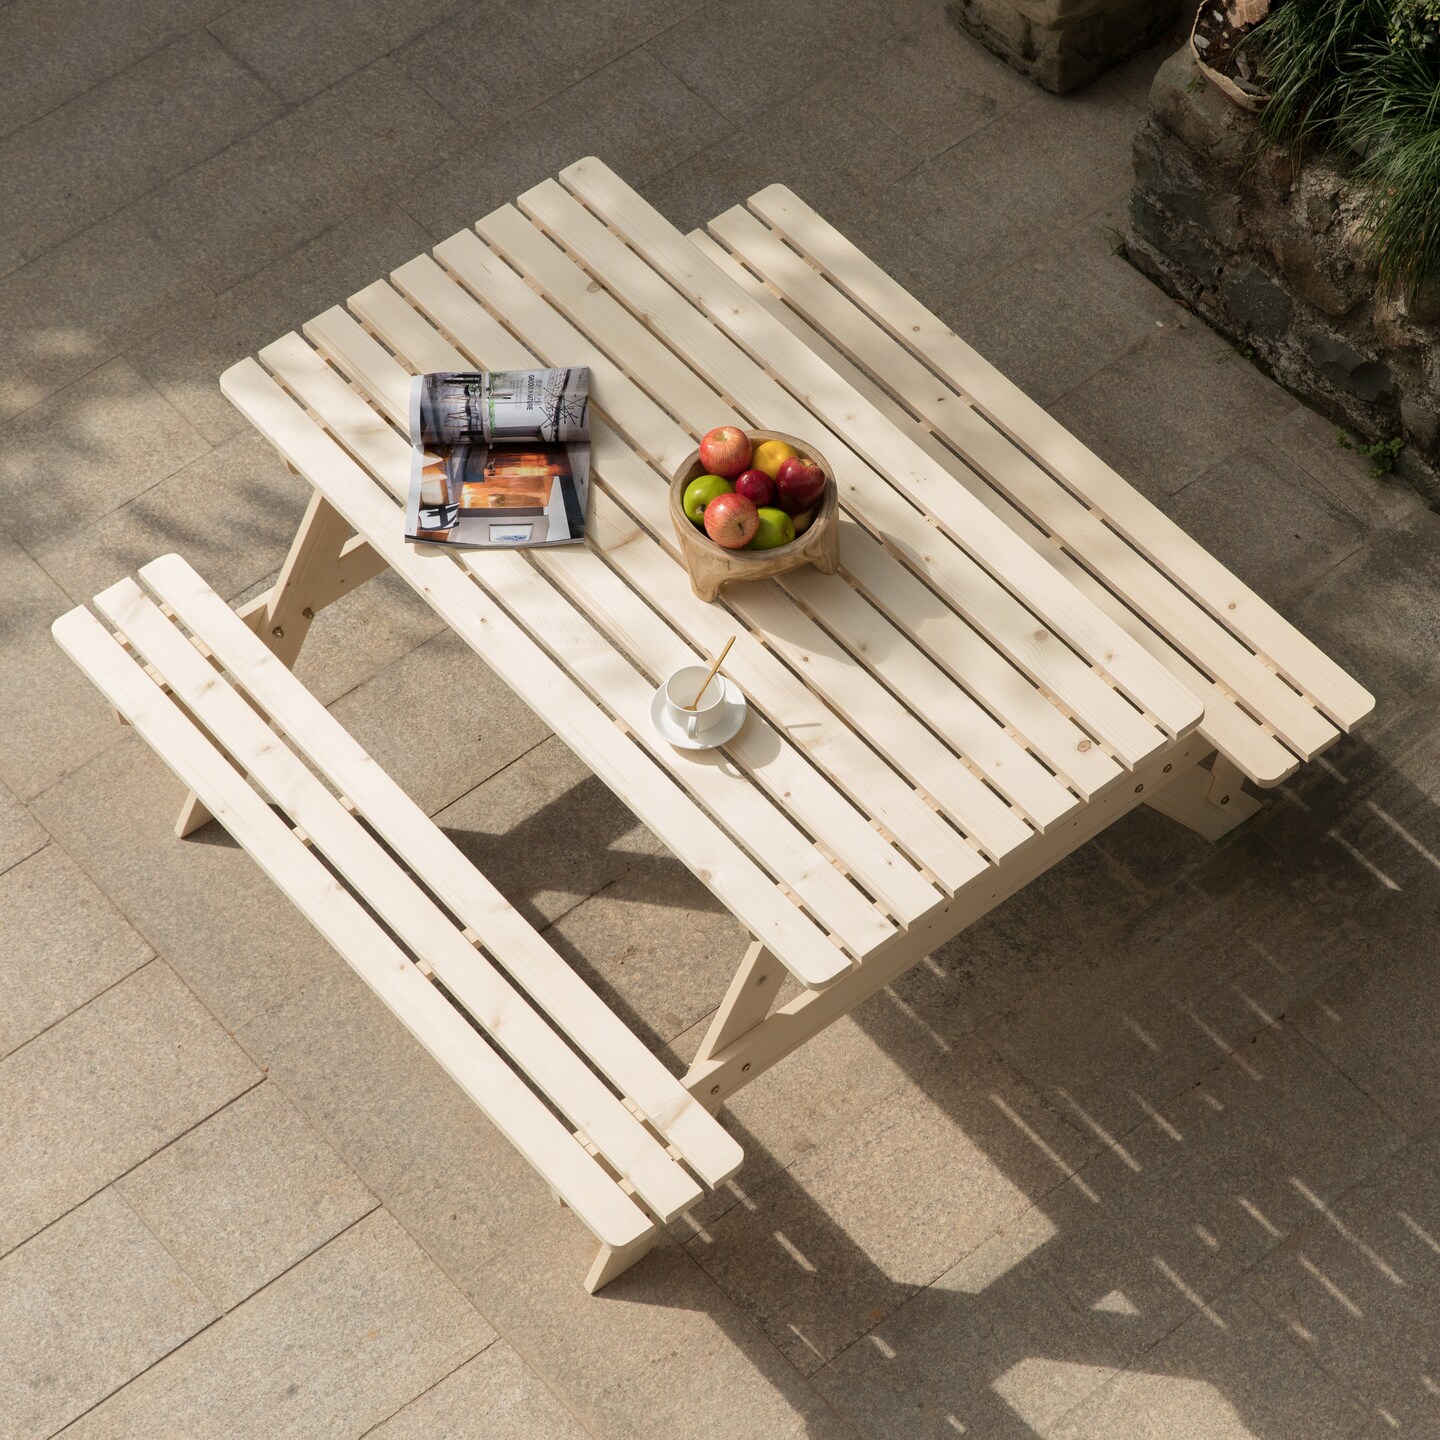 Outdoor Wooden Patio Deck Garden 6-Person Picnic Table, for Backyard, Garden